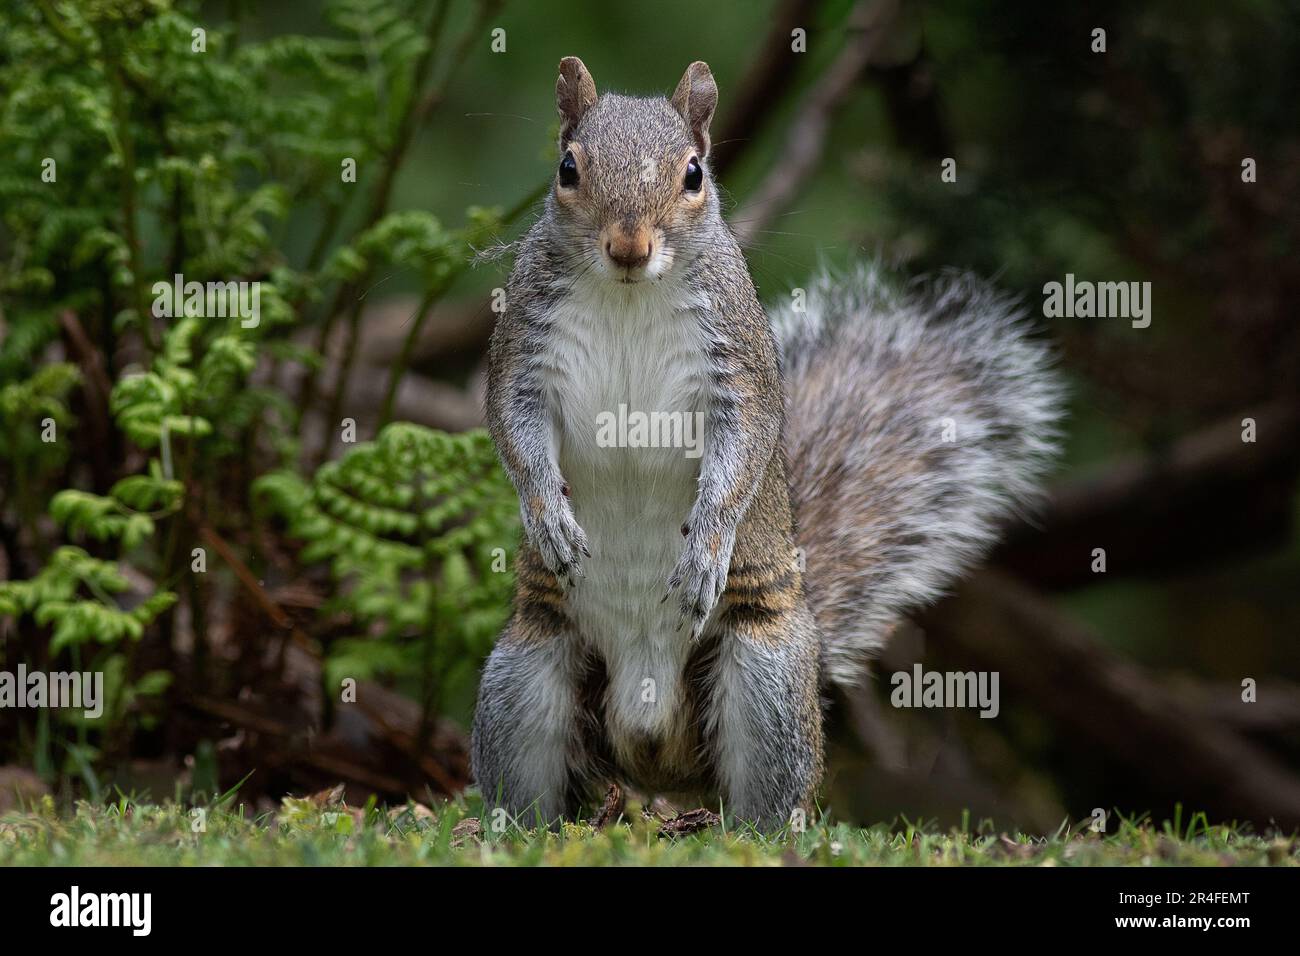 Ein lustiges Foto eines grauen Eichhörnchens, das auf seinen hinteren Beinen steht und in die Kamera starrt. Ein verschwommener Hintergrund mit Platz für Text beendet den Vorgang. Stockfoto